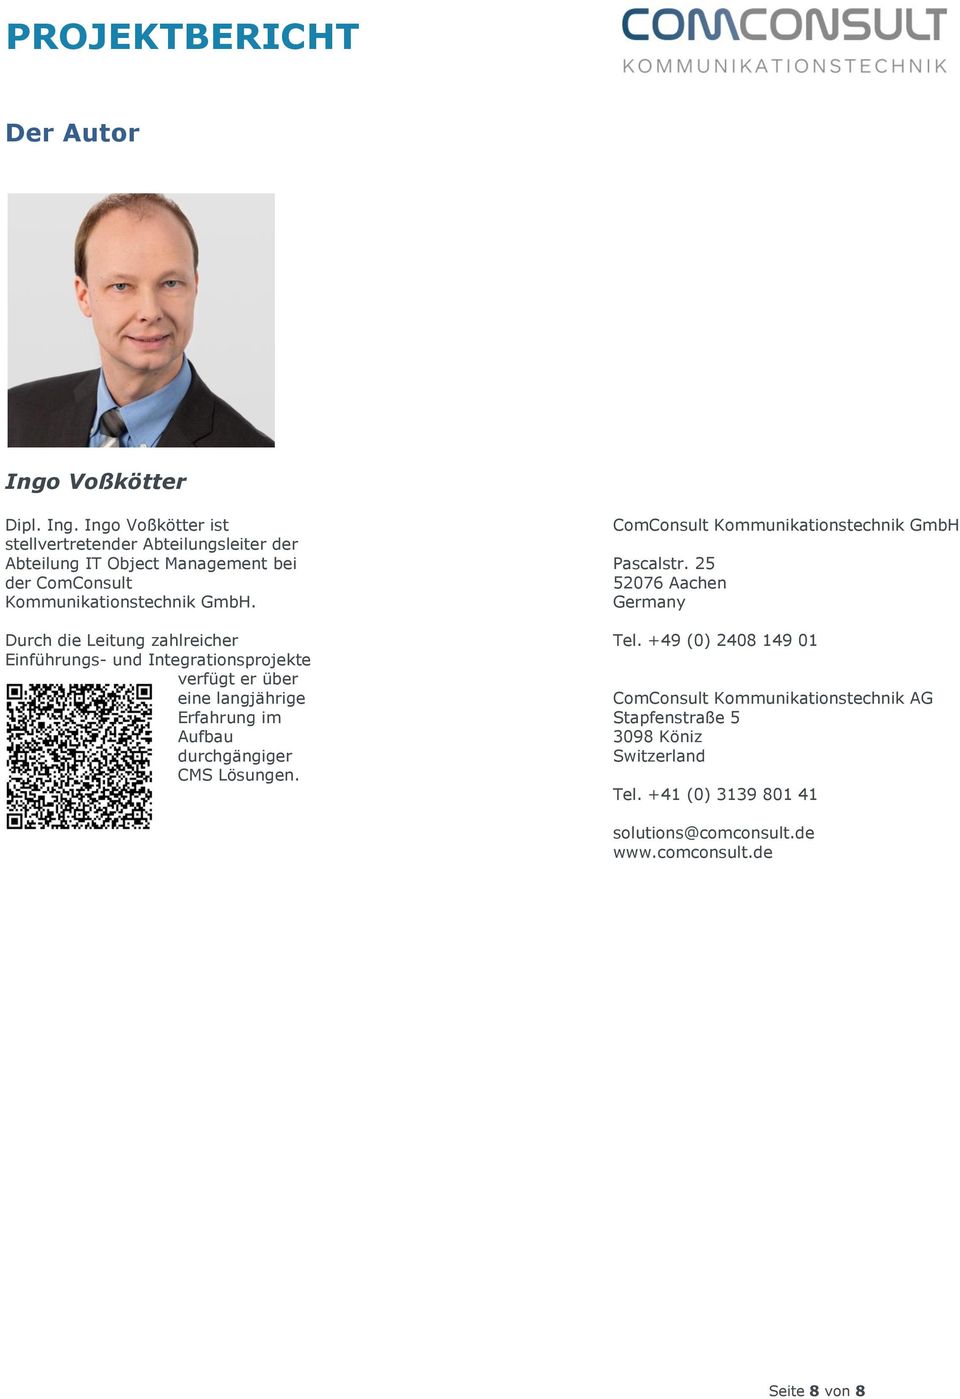 Ingo Voßkötter ist stellvertretender Abteilungsleiter der Abteilung IT Object Management bei der ComConsult Kommunikationstechnik GmbH.